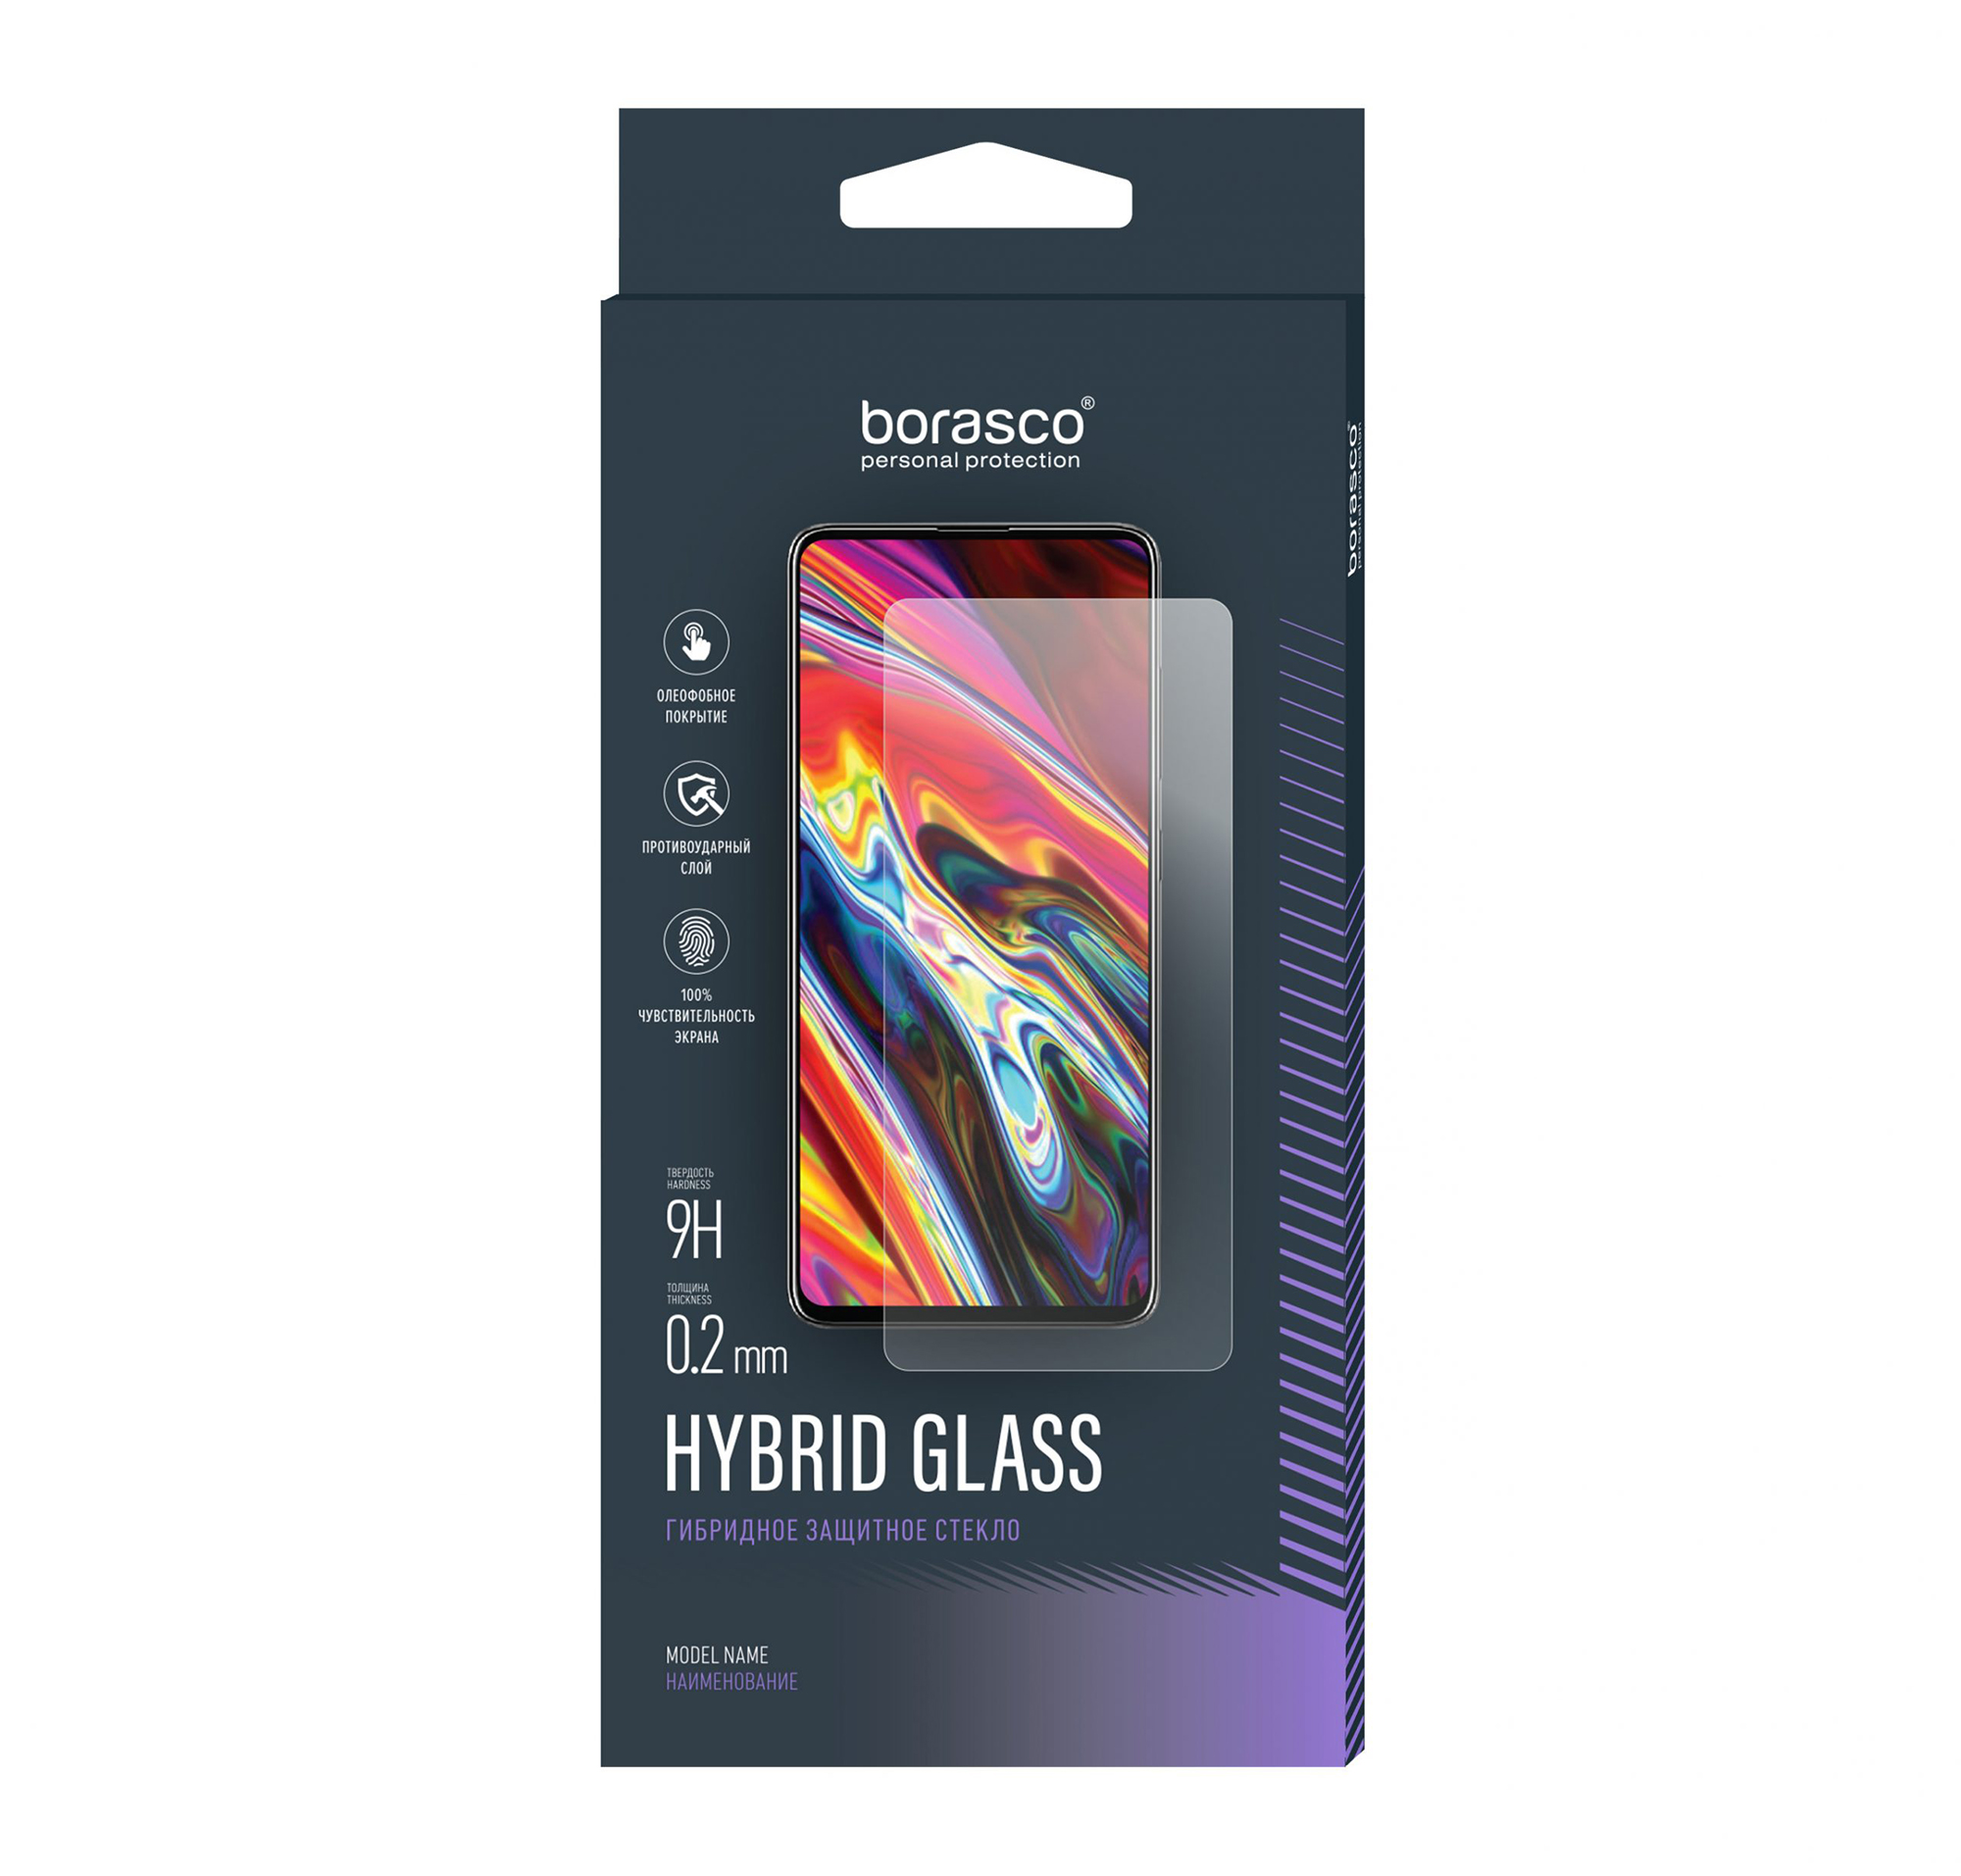 Защитное стекло Hybrid Glass для Asus ZenFone 2 (ZE500KL) закаленное стекло для asus zenfone max m1 m2 zb602kl zb601kl zb631kl zb633kl защитное стекло для asus zb555kl zb570tl za550kl пленка